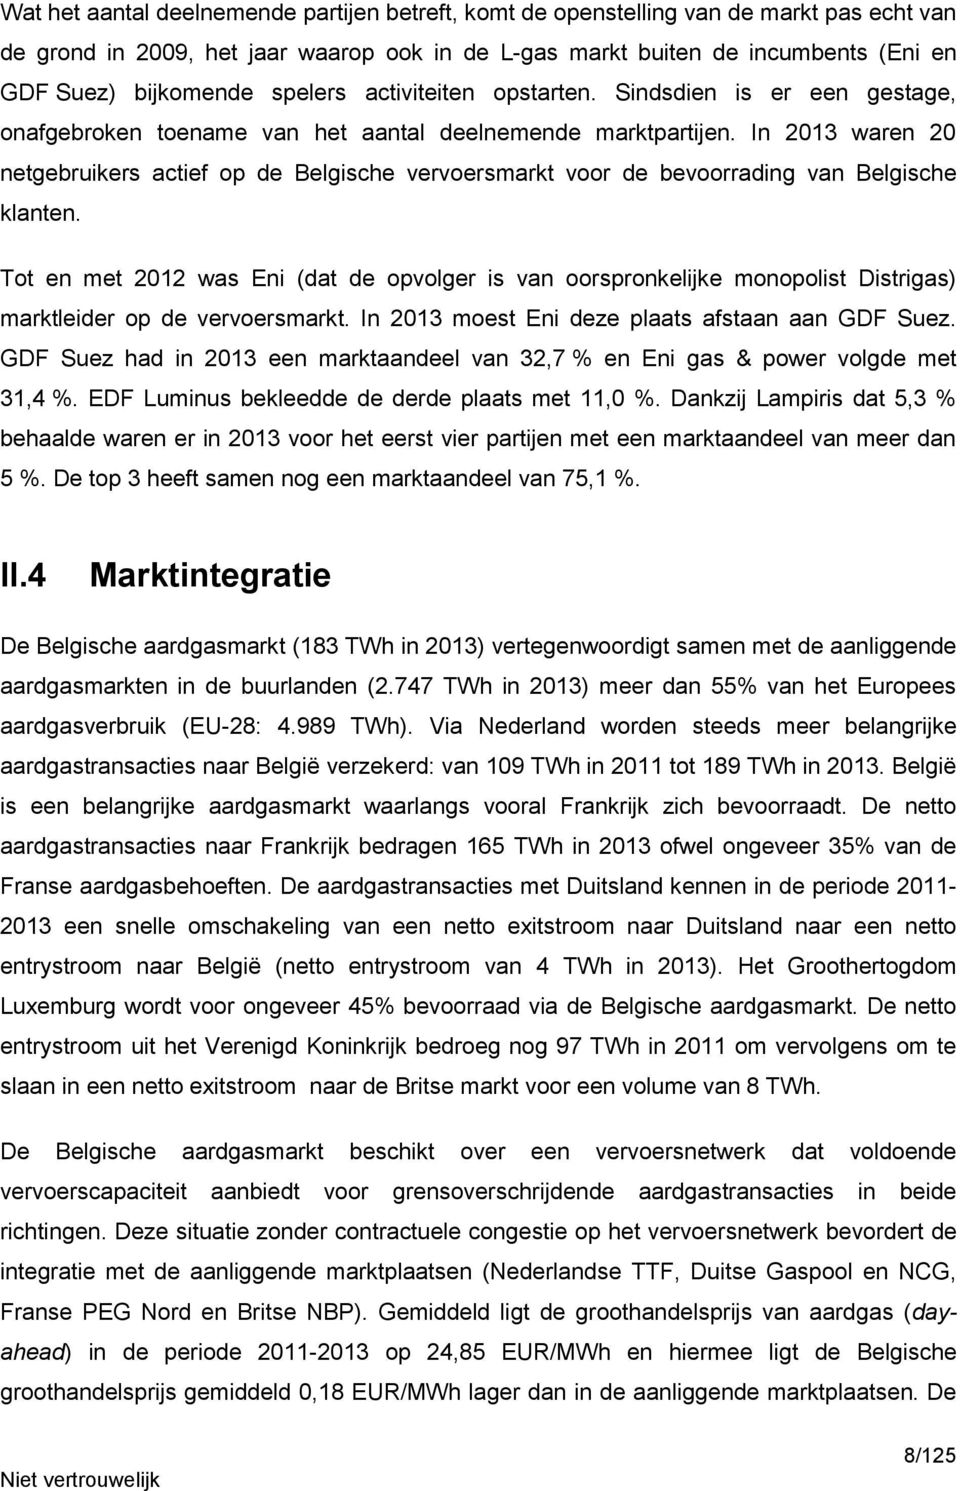 In 2013 waren 20 netgebruikers actief op de Belgische vervoersmarkt voor de bevoorrading van Belgische klanten.